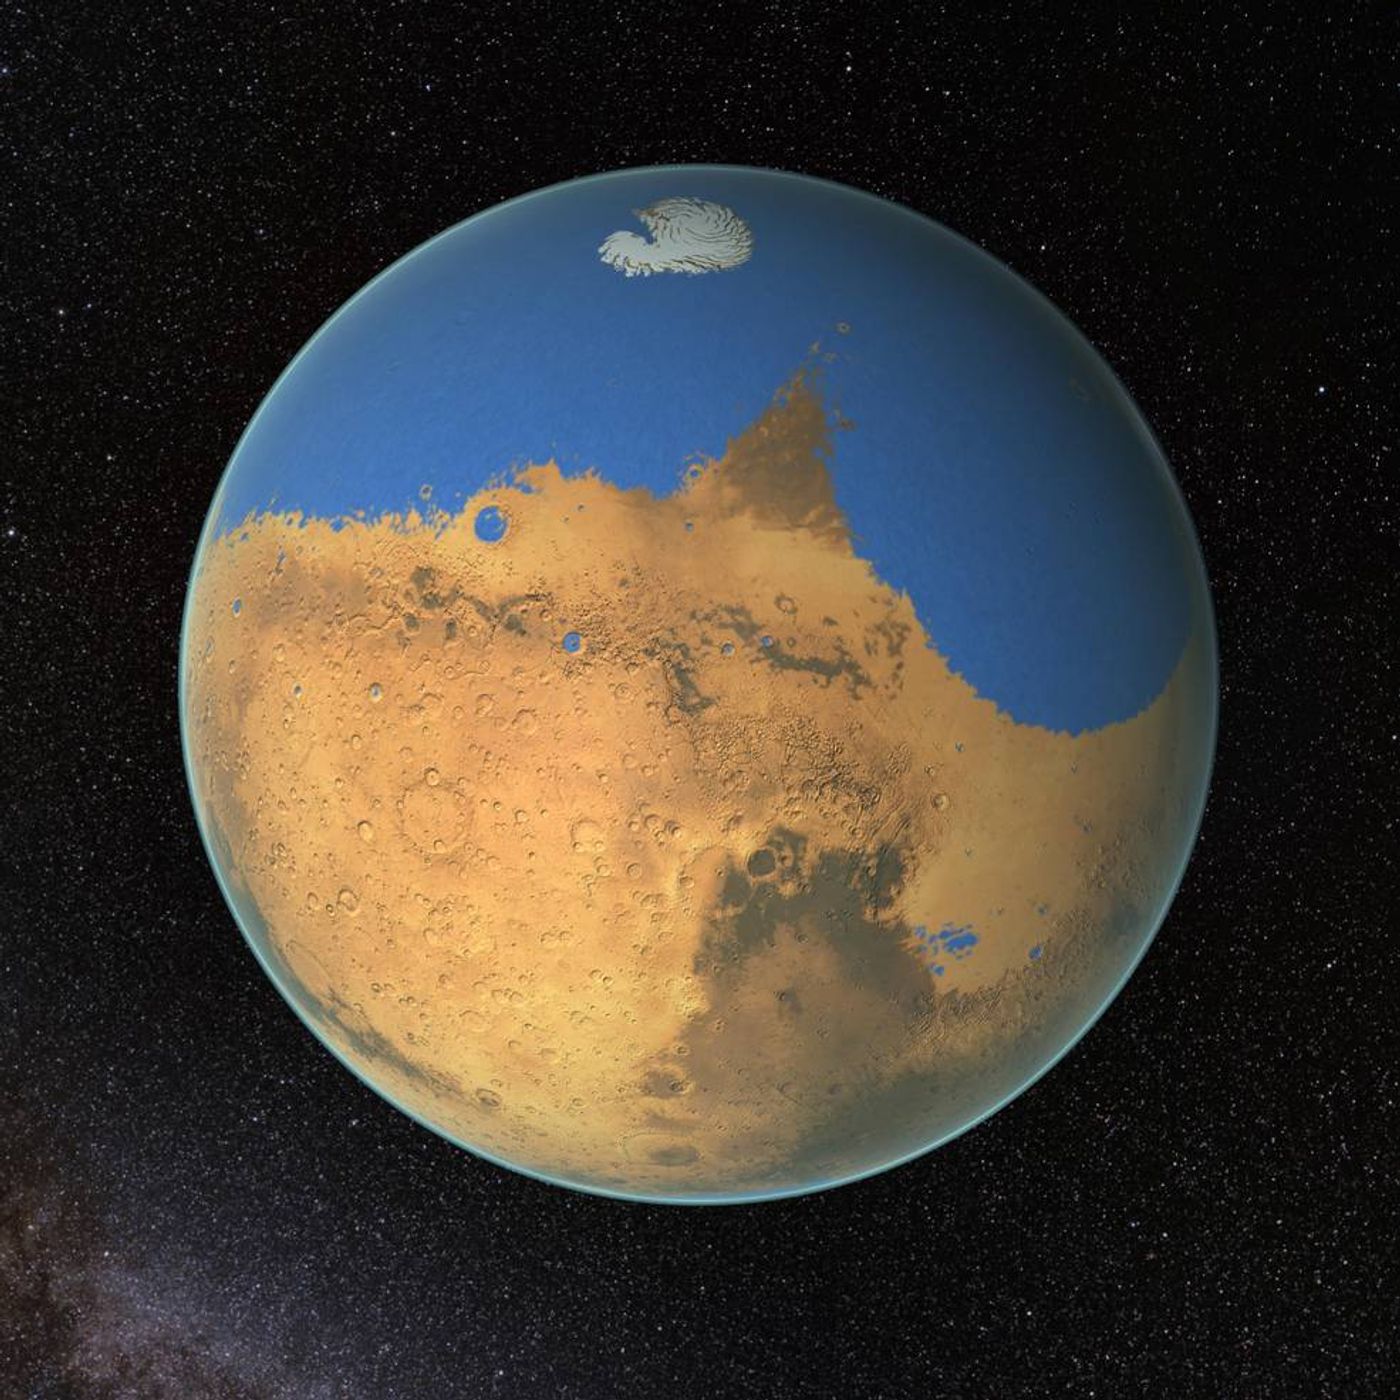 Artist's illustration of ancient Mars. (Credit: NASA/Goddard Space Flight Center)